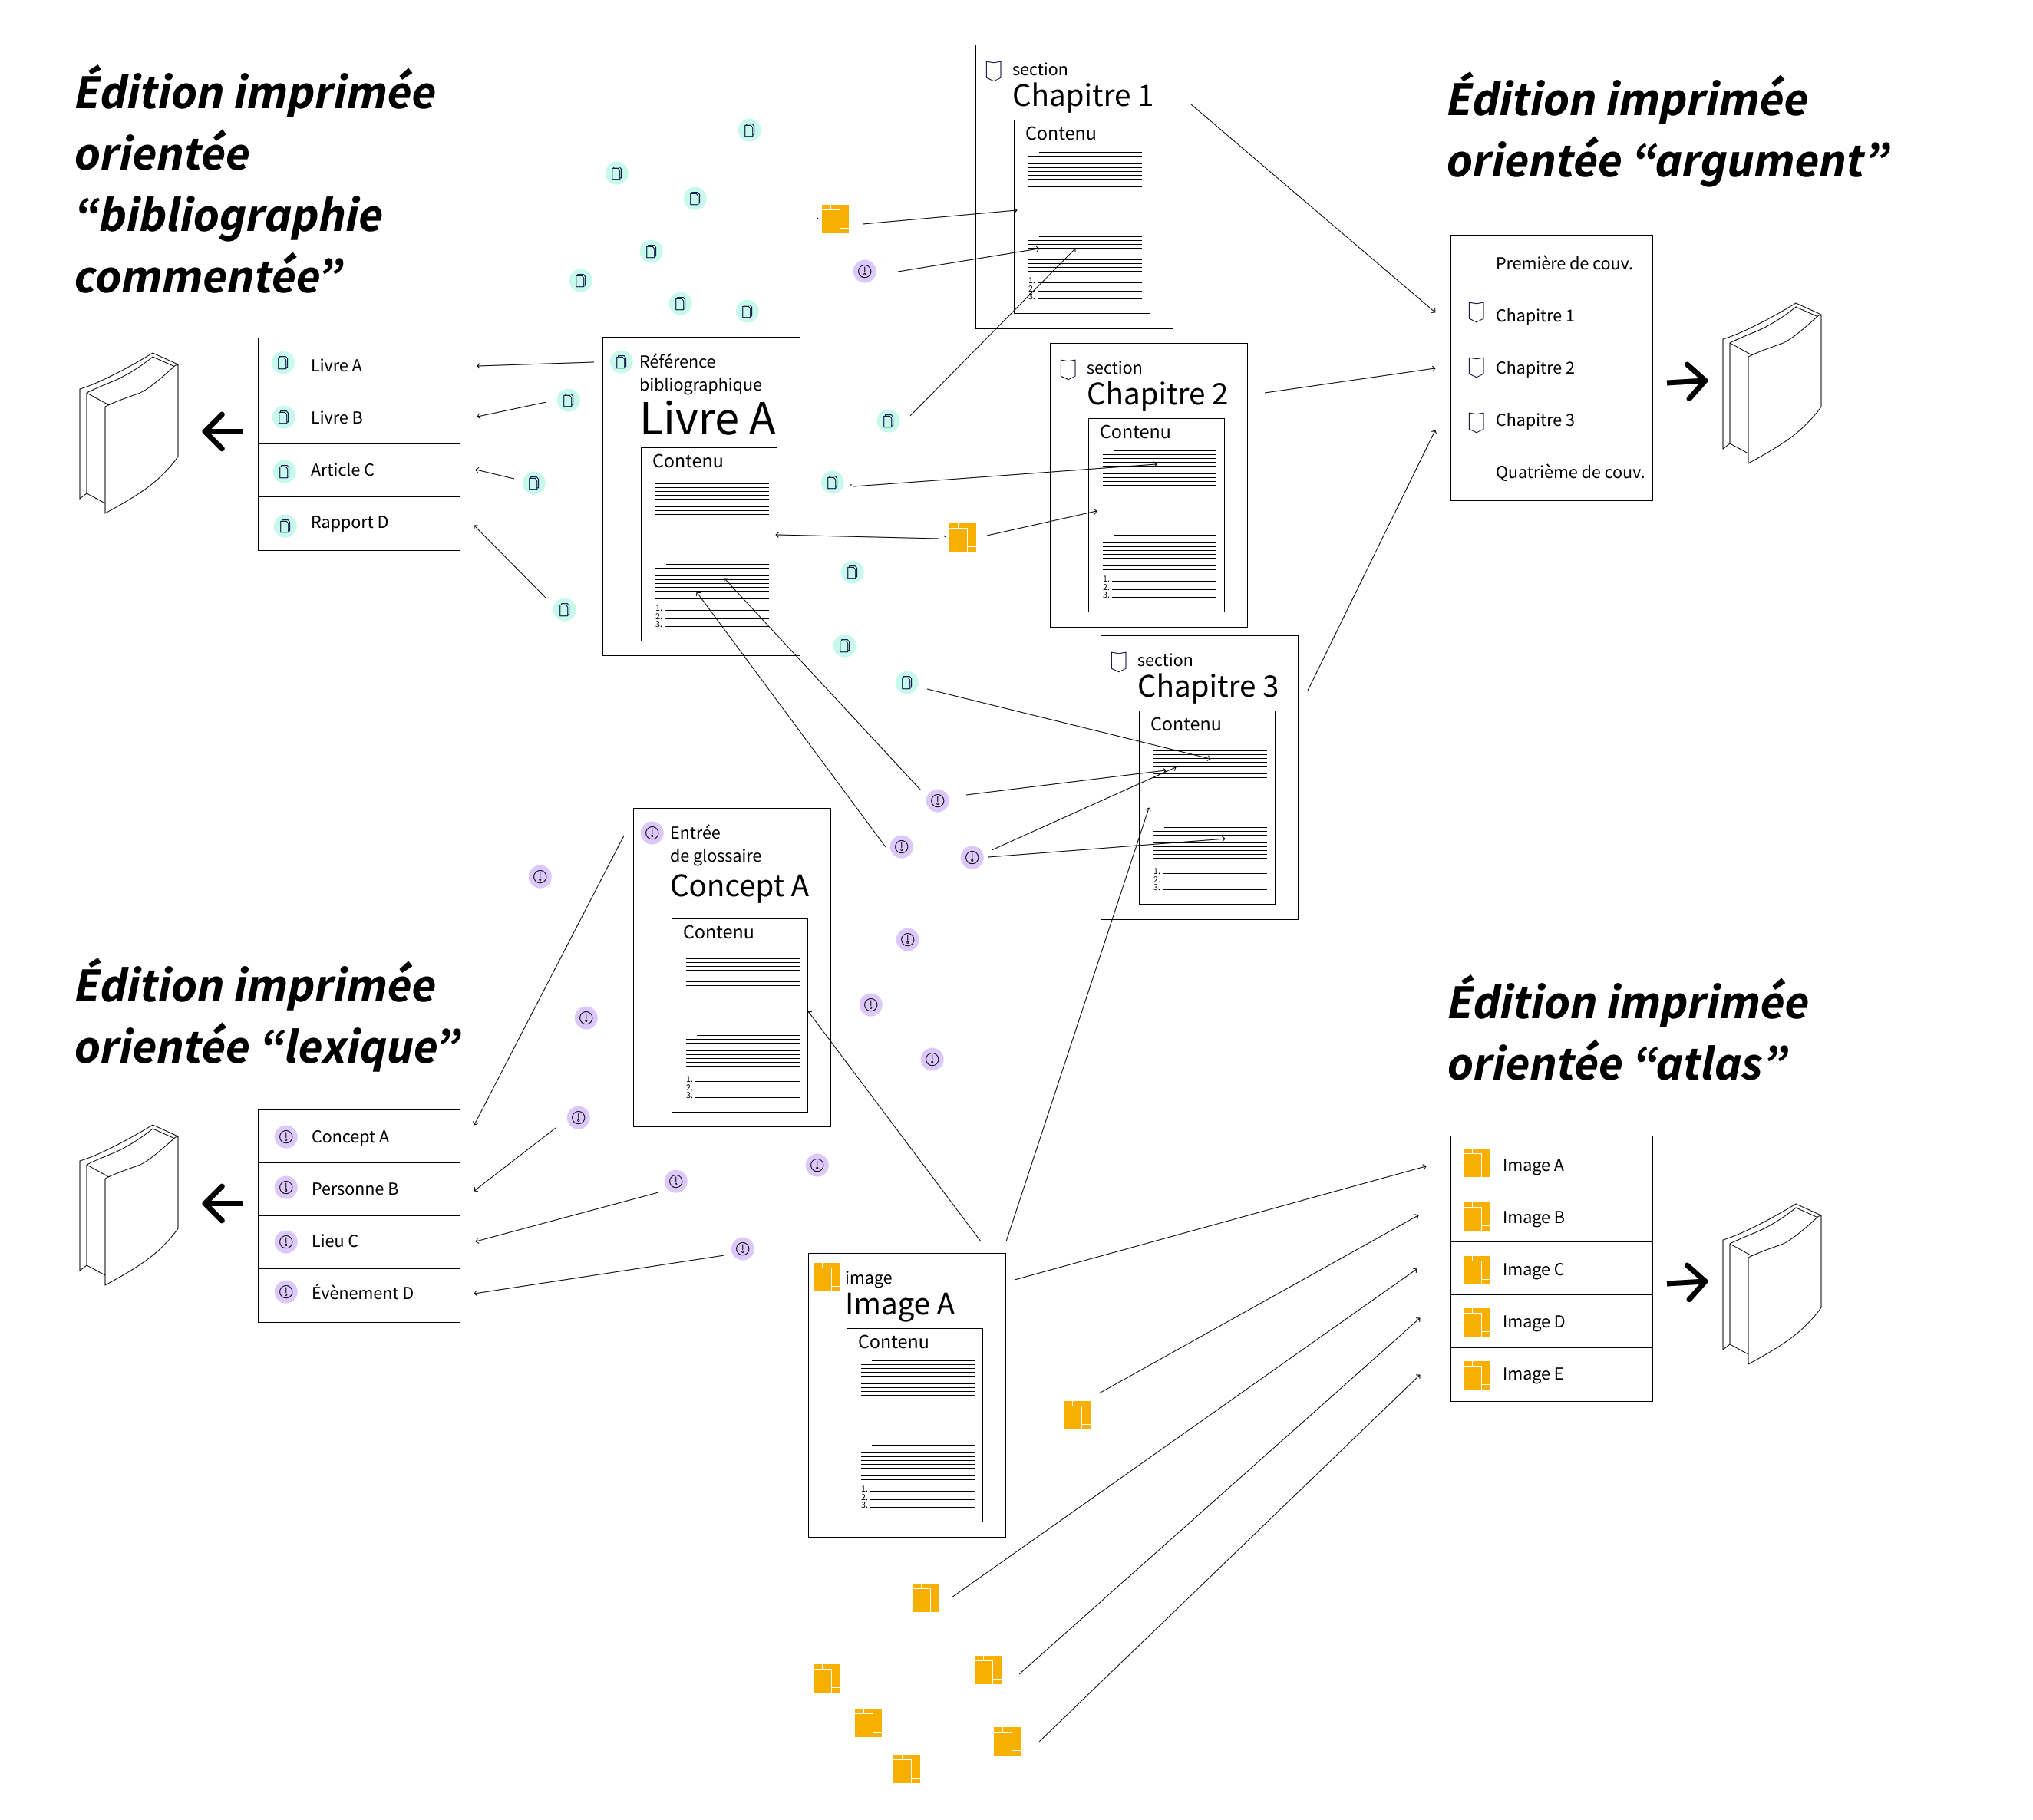 Exemples de stratégies d'édition possibles à partir du modèle utilisé par Ovide